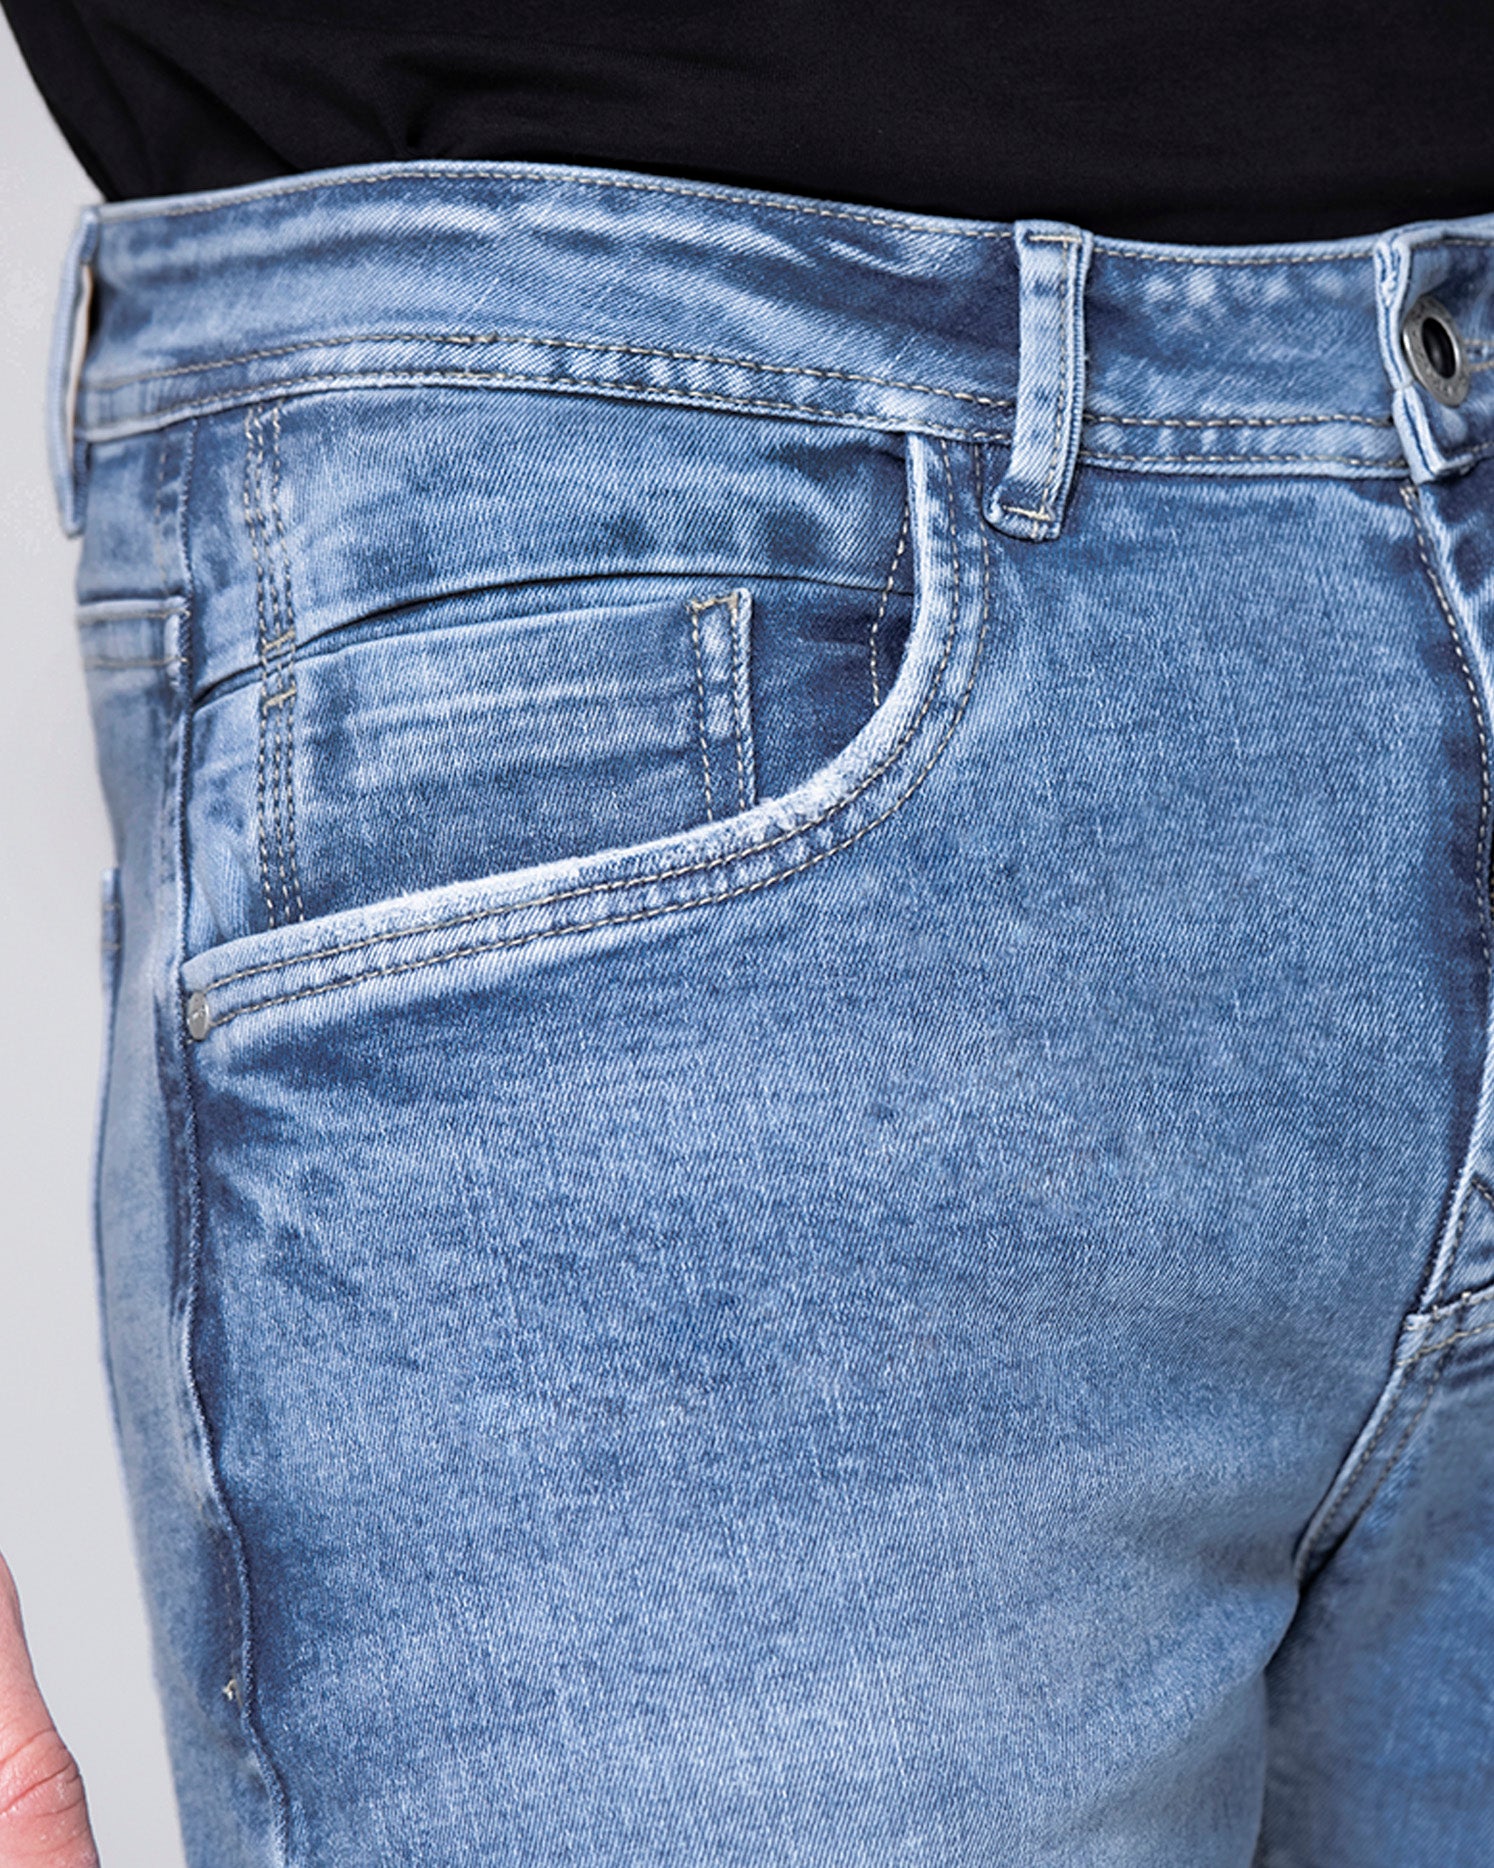 Arma tu pinta con nuestro jean slim en denim color azul claro con elongación, de silueta semi ajustada desde la cadera hasta los tobillos y cinco bolsillos funcionales, que te aportaran el toque de audacia, elegancia y comodidad que necesitas.